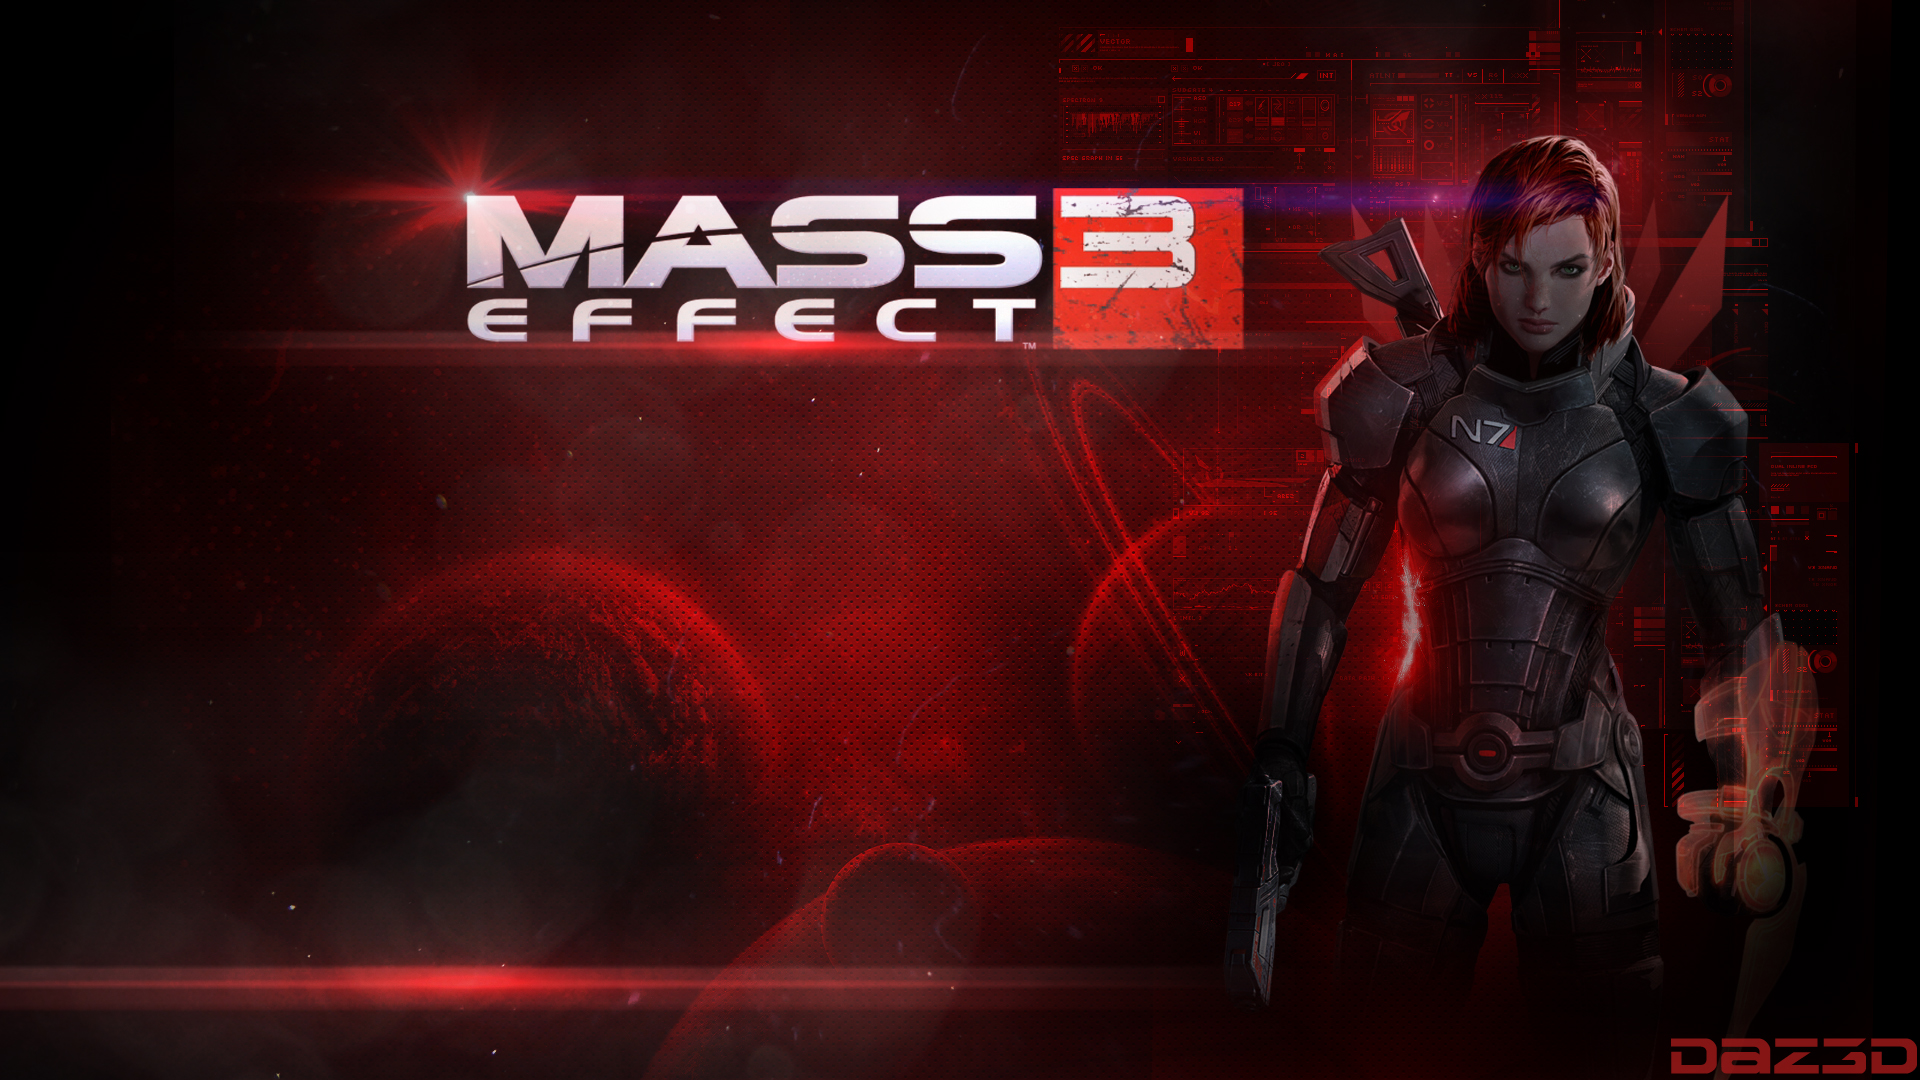 Mass Effect Femshep Fan Made Wallpaper By Dazegfx